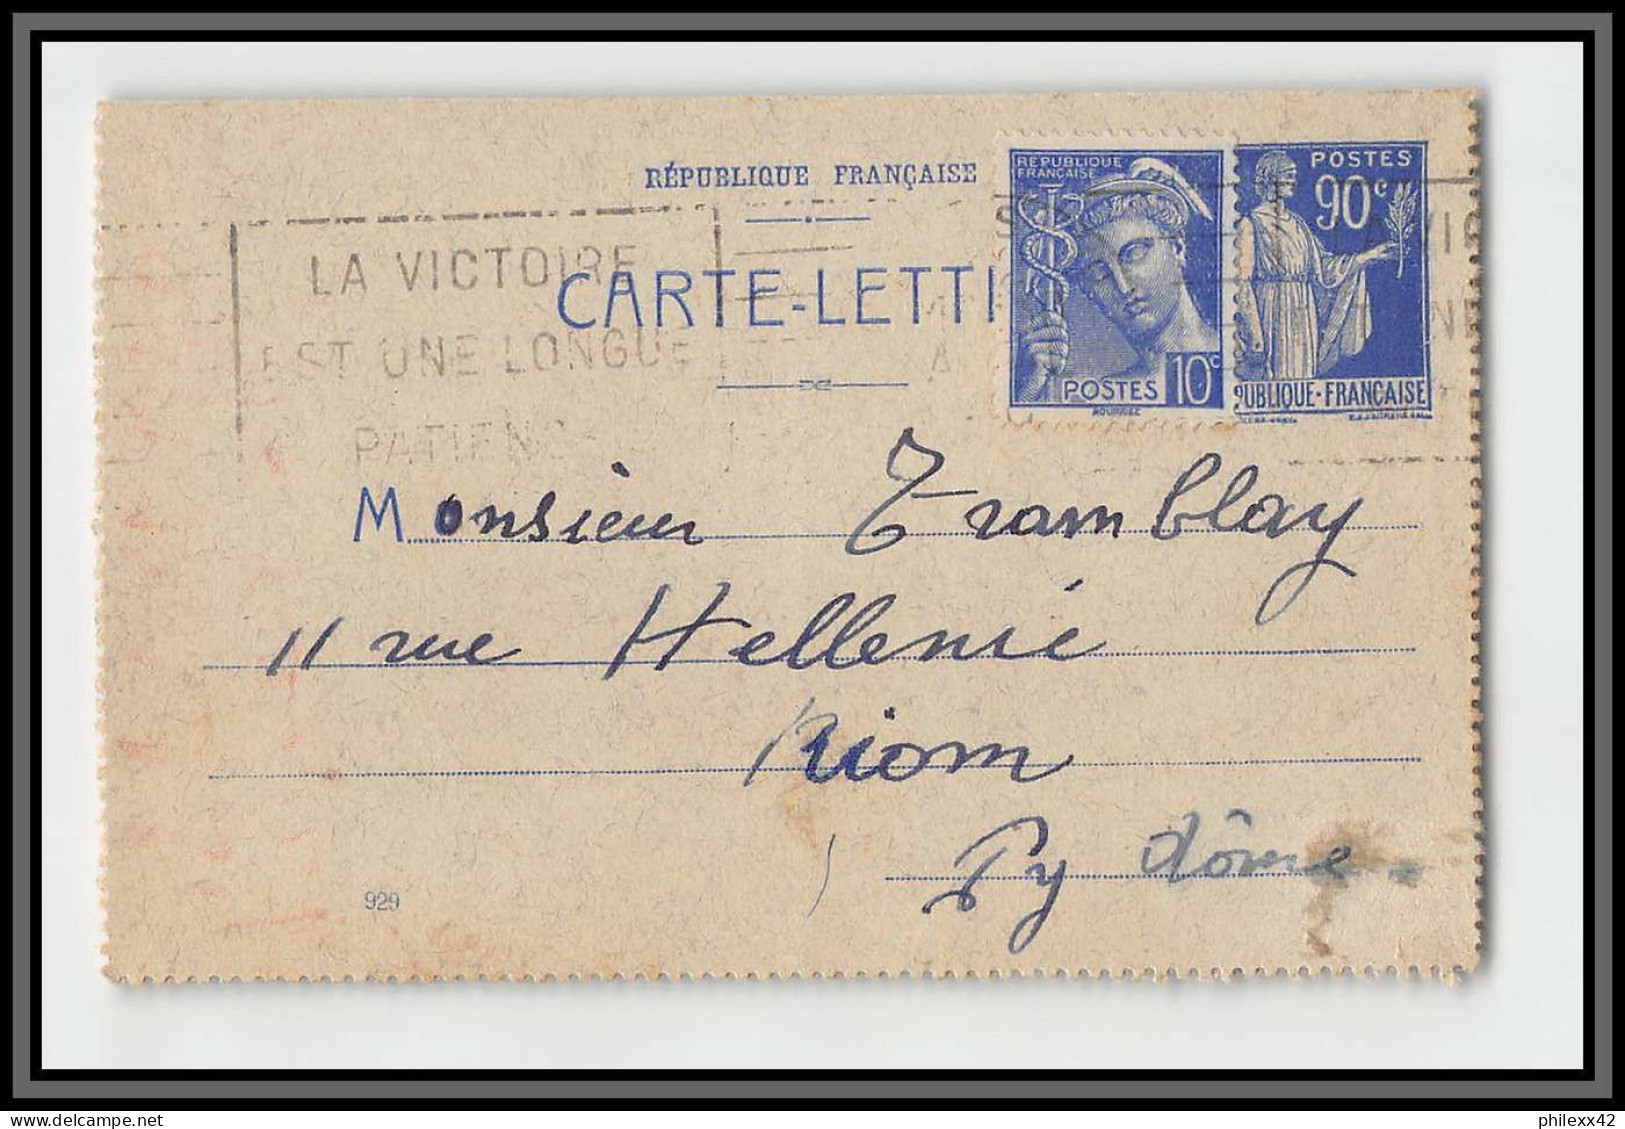 75160 90c Bleu PAI F2 Date 929 Krag Paris Riom 1940 Paix Entier Postal Stationery Carte Lettre France - Letter Cards